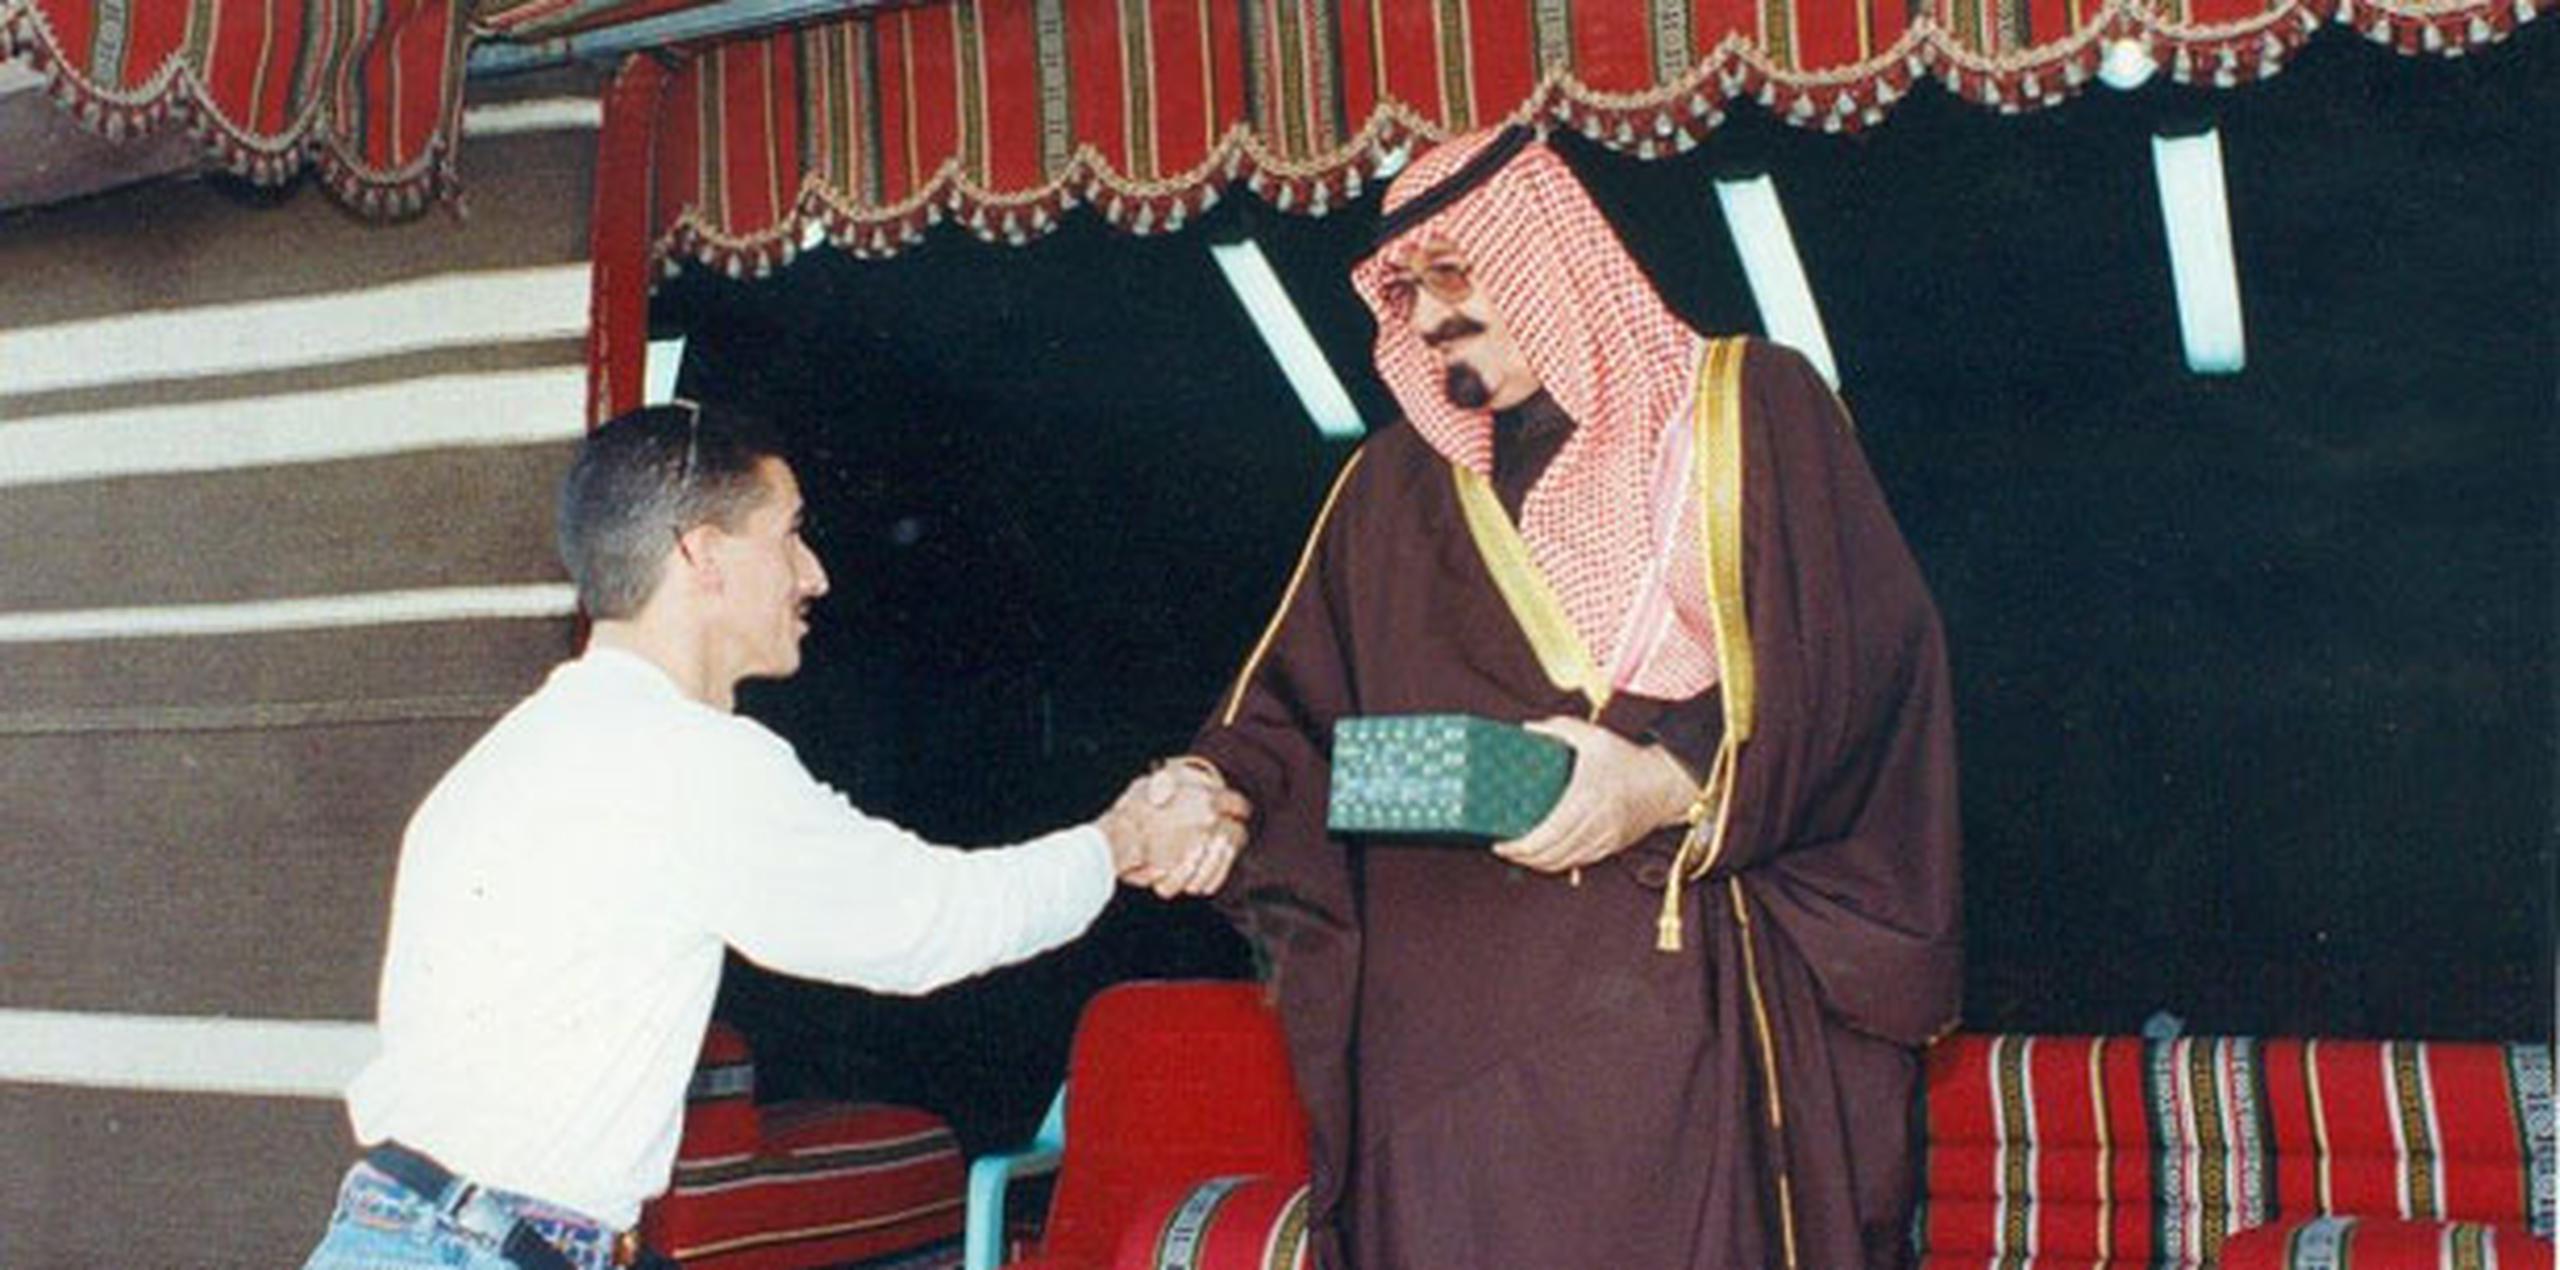 Díaz fue contratado para una temporada en Arabia Saudí en agosto del 2000 y salió el país un mes antes del ataque terrorista que derrumbó las Torres Gemelas en el 2001. (Suministrada)